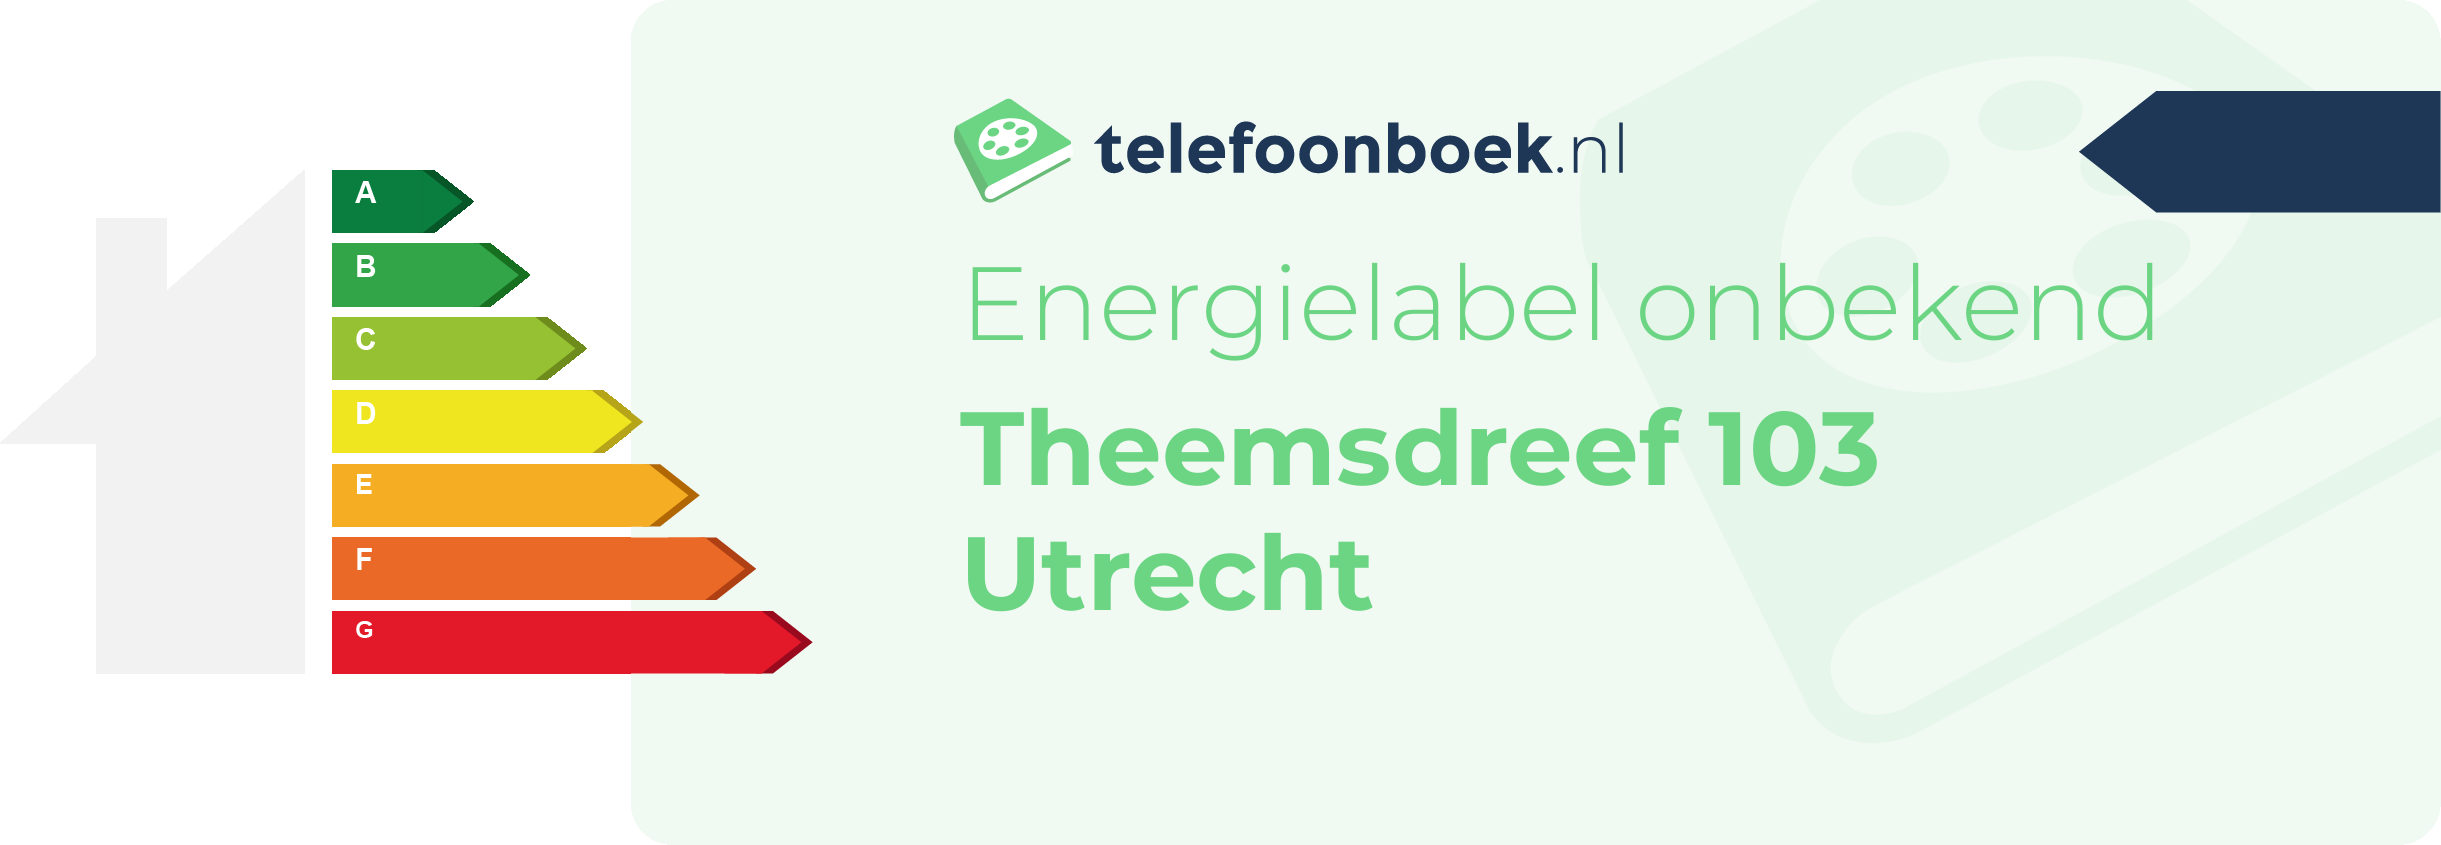 Energielabel Theemsdreef 103 Utrecht